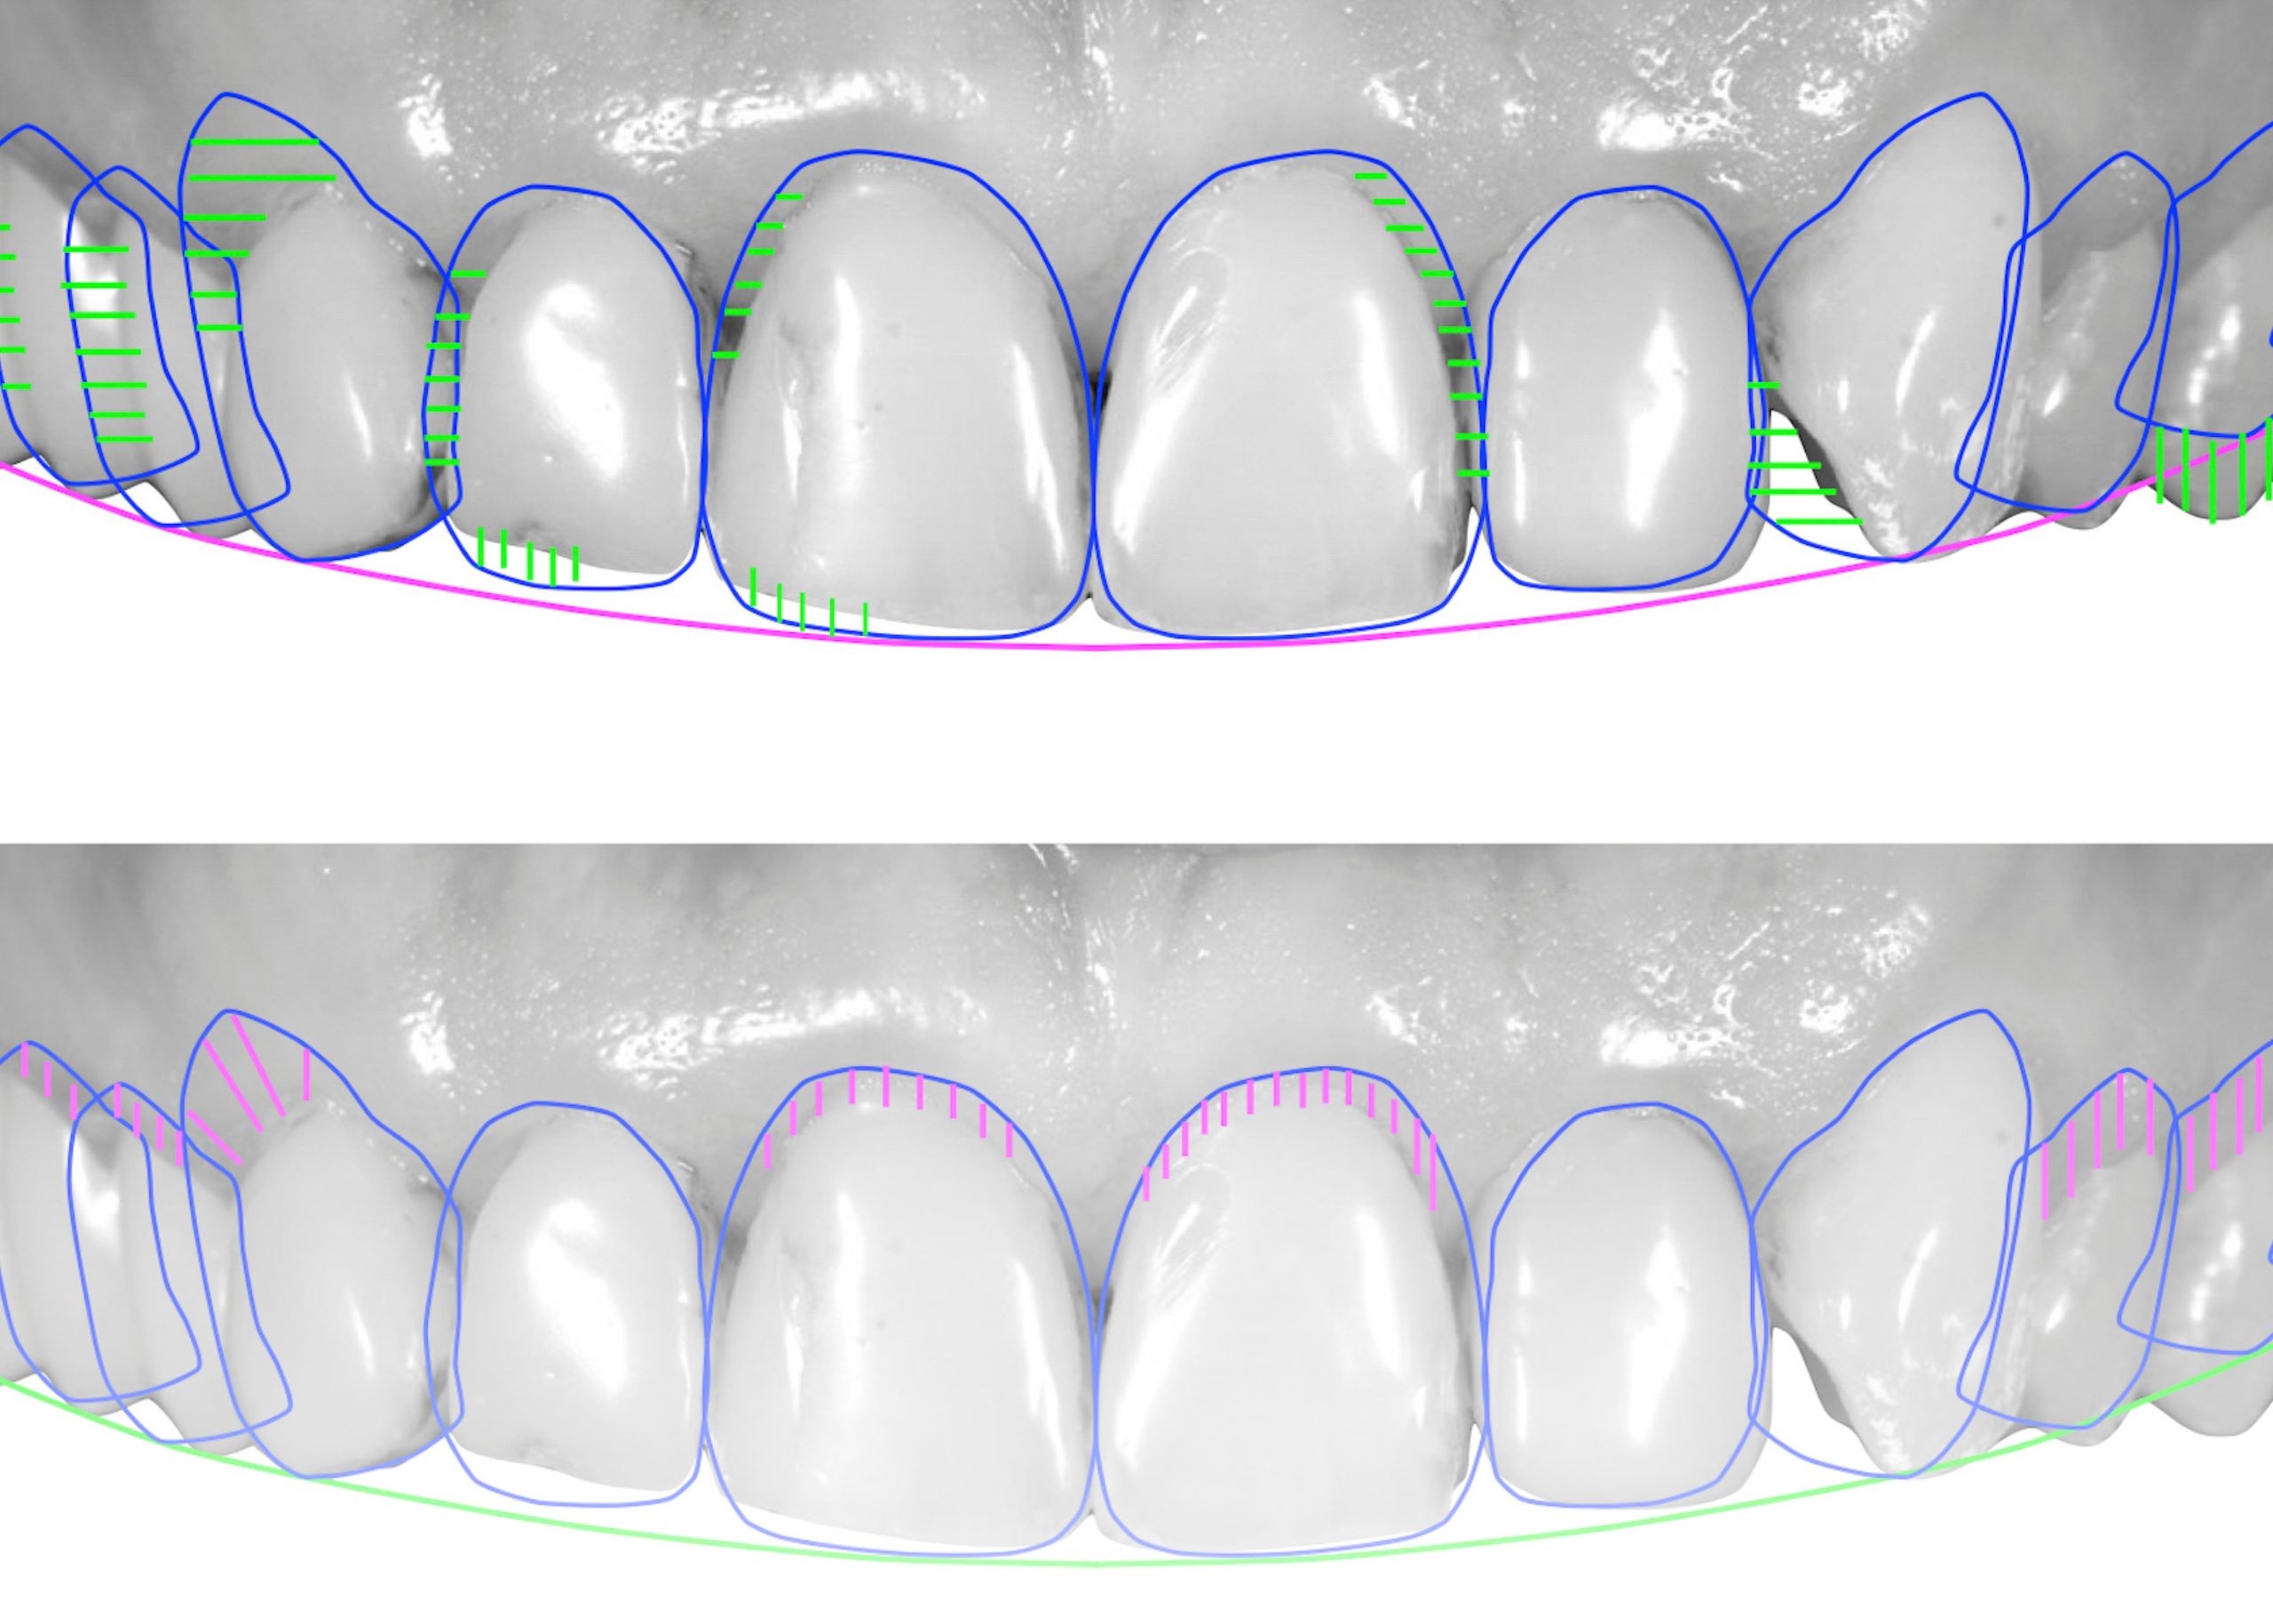 إطلاق العنان للجمال: قوة تصميم الابتسامة الذكية في طب الأسنان